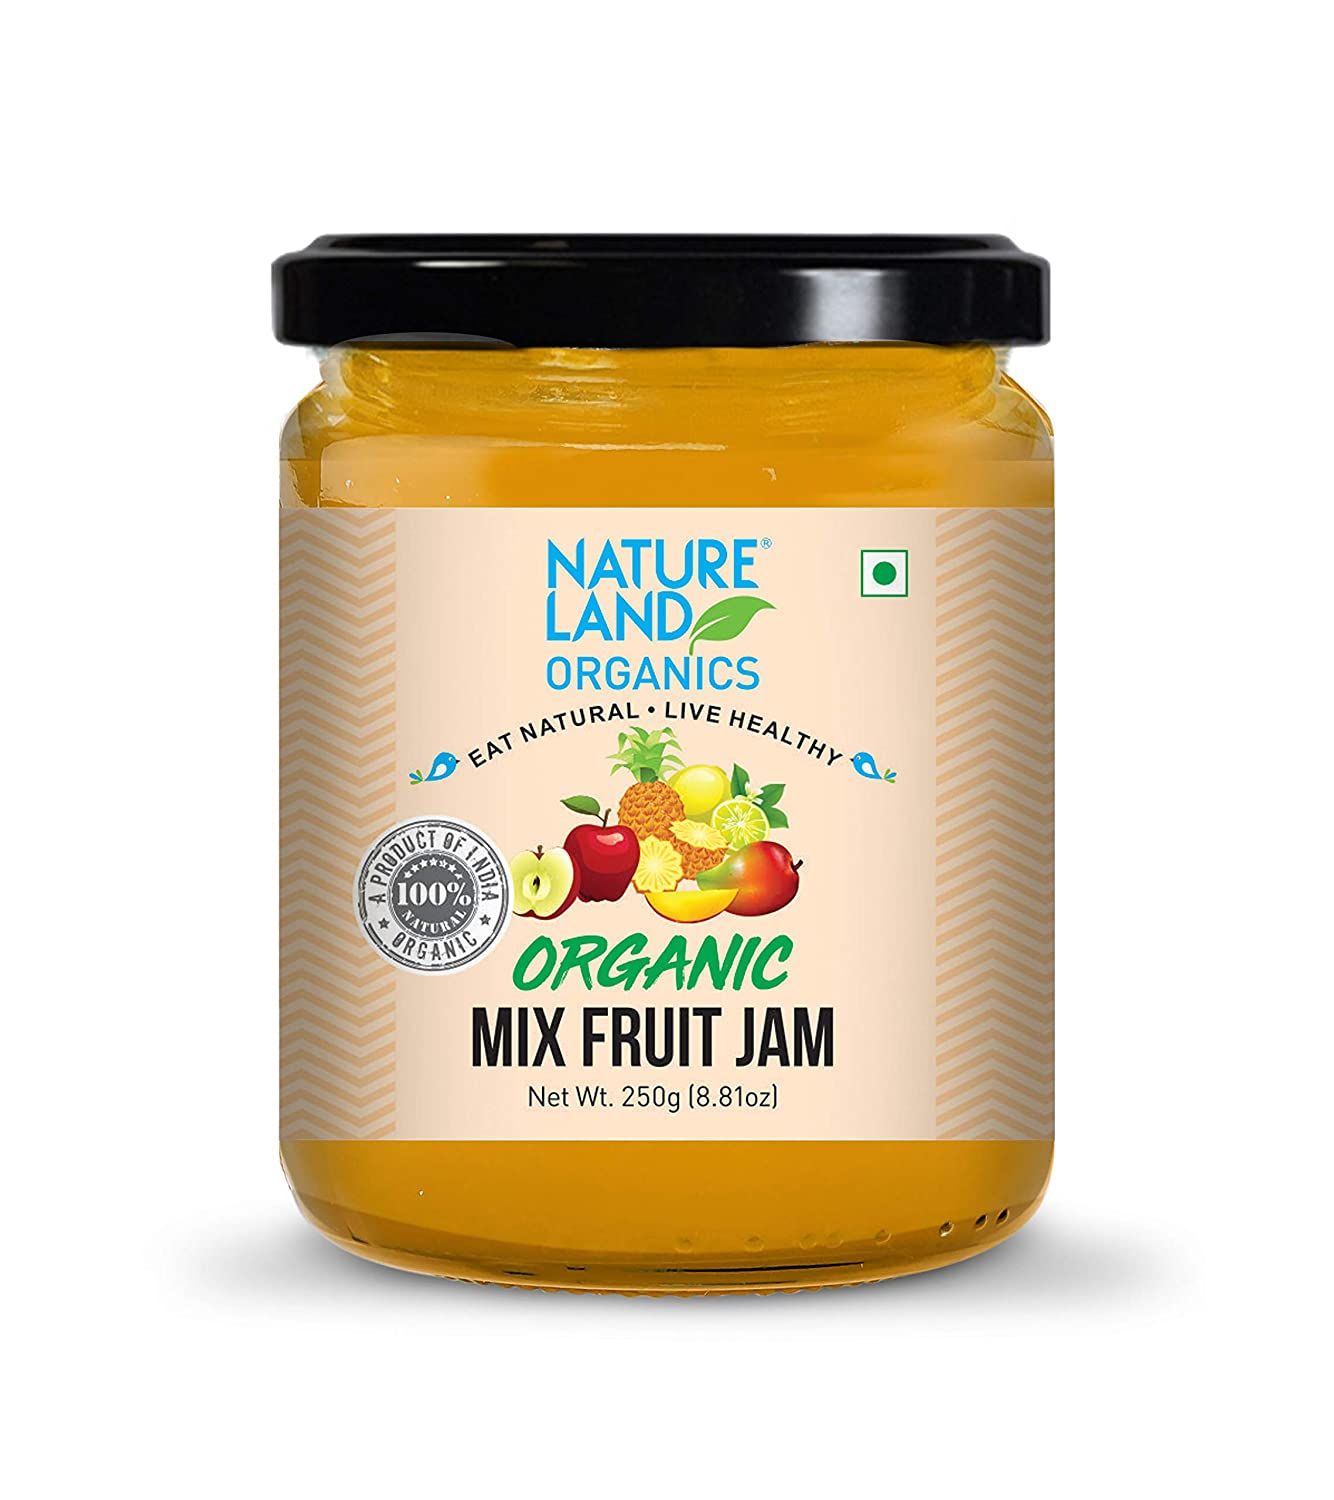 Natureland Organics Mix Fruit Jam Image